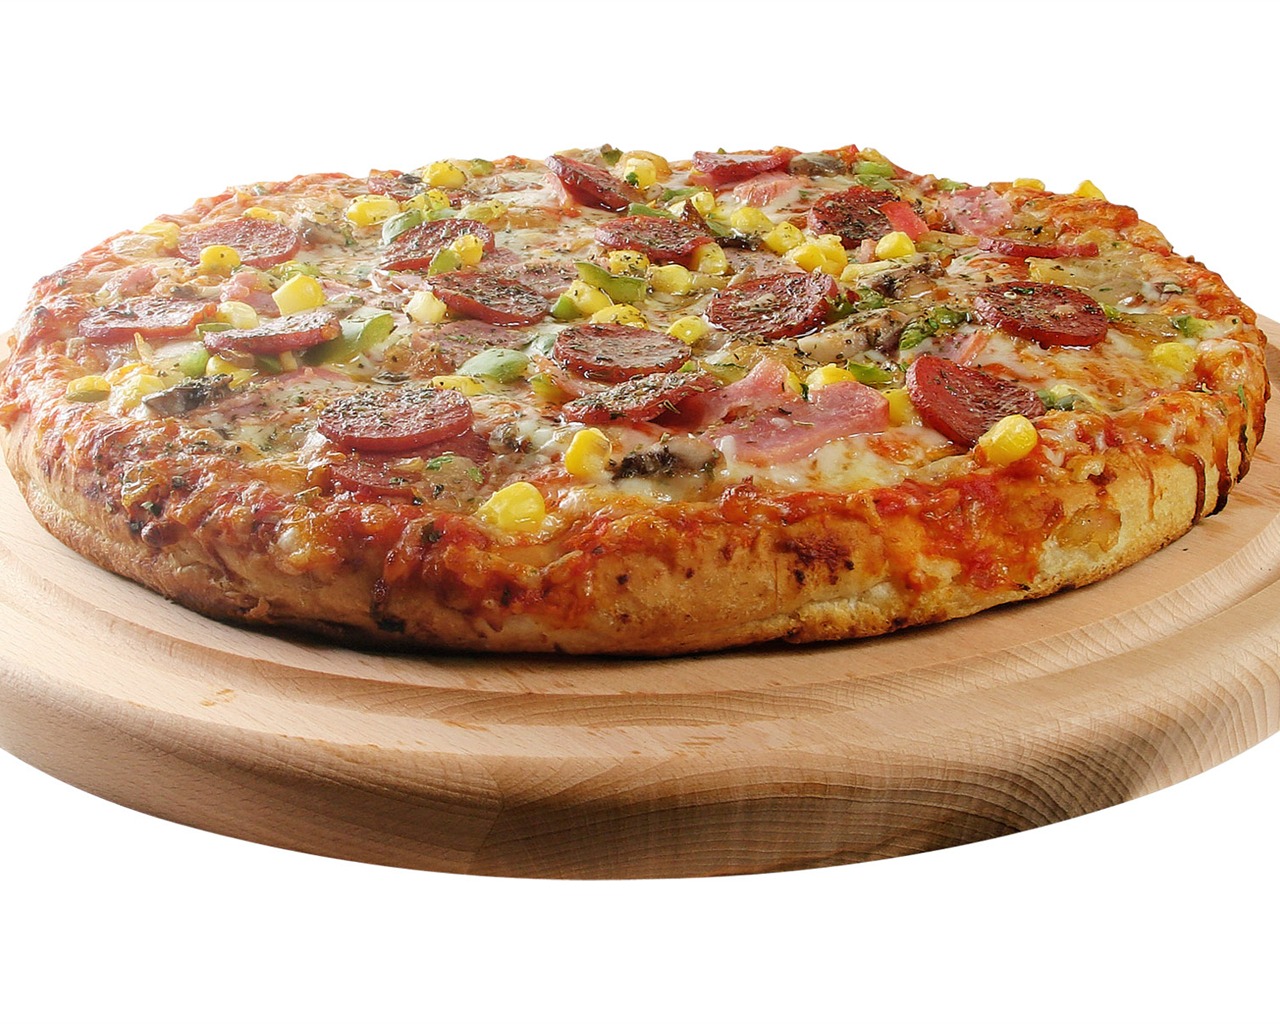 Fondos de pizzerías de Alimentos (3) #14 - 1280x1024